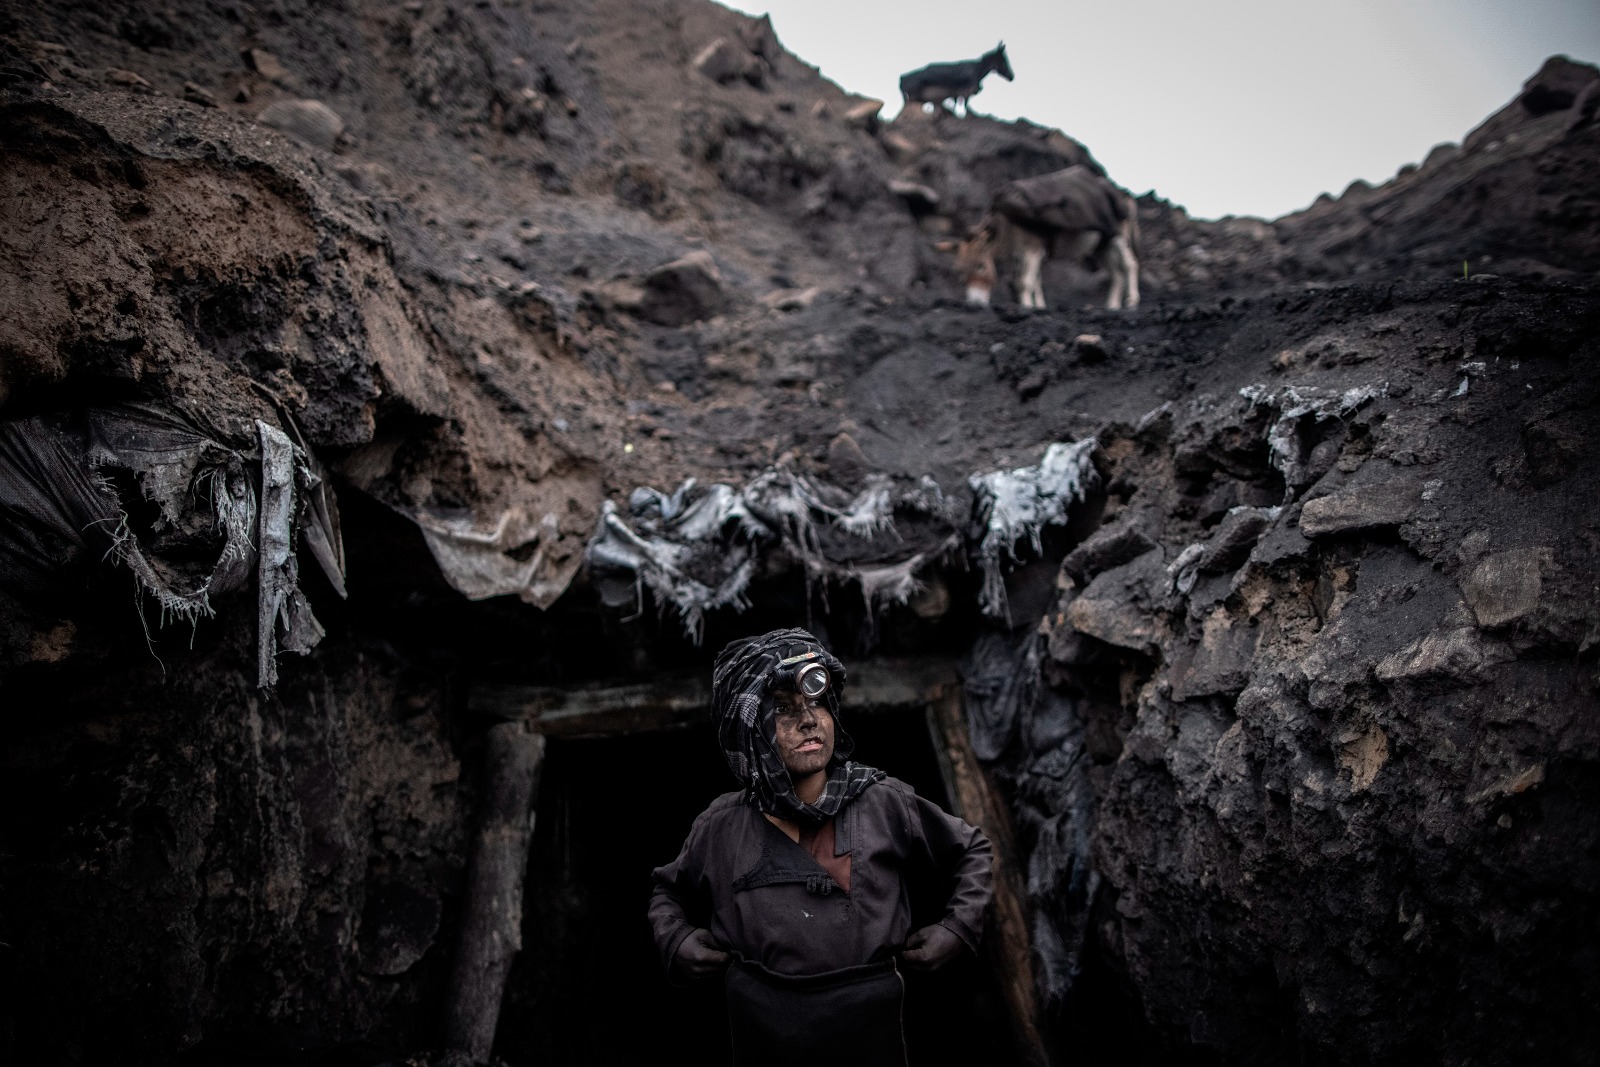 Imagen del reportaje "En los agujeros de Chinarak", del fotógrafo alemán Oliver Weiken, ganador del segundo premio del concurso internacional de UNICEF. EFE/Oliver Weiken/UNICEF SOLO USO EDITORIAL/SOLO DISPONIBLE PARA ILUSTRAR LA NOTICIA QUE ACOMPAÑA (CRÉDITO OBLIGATORIO)